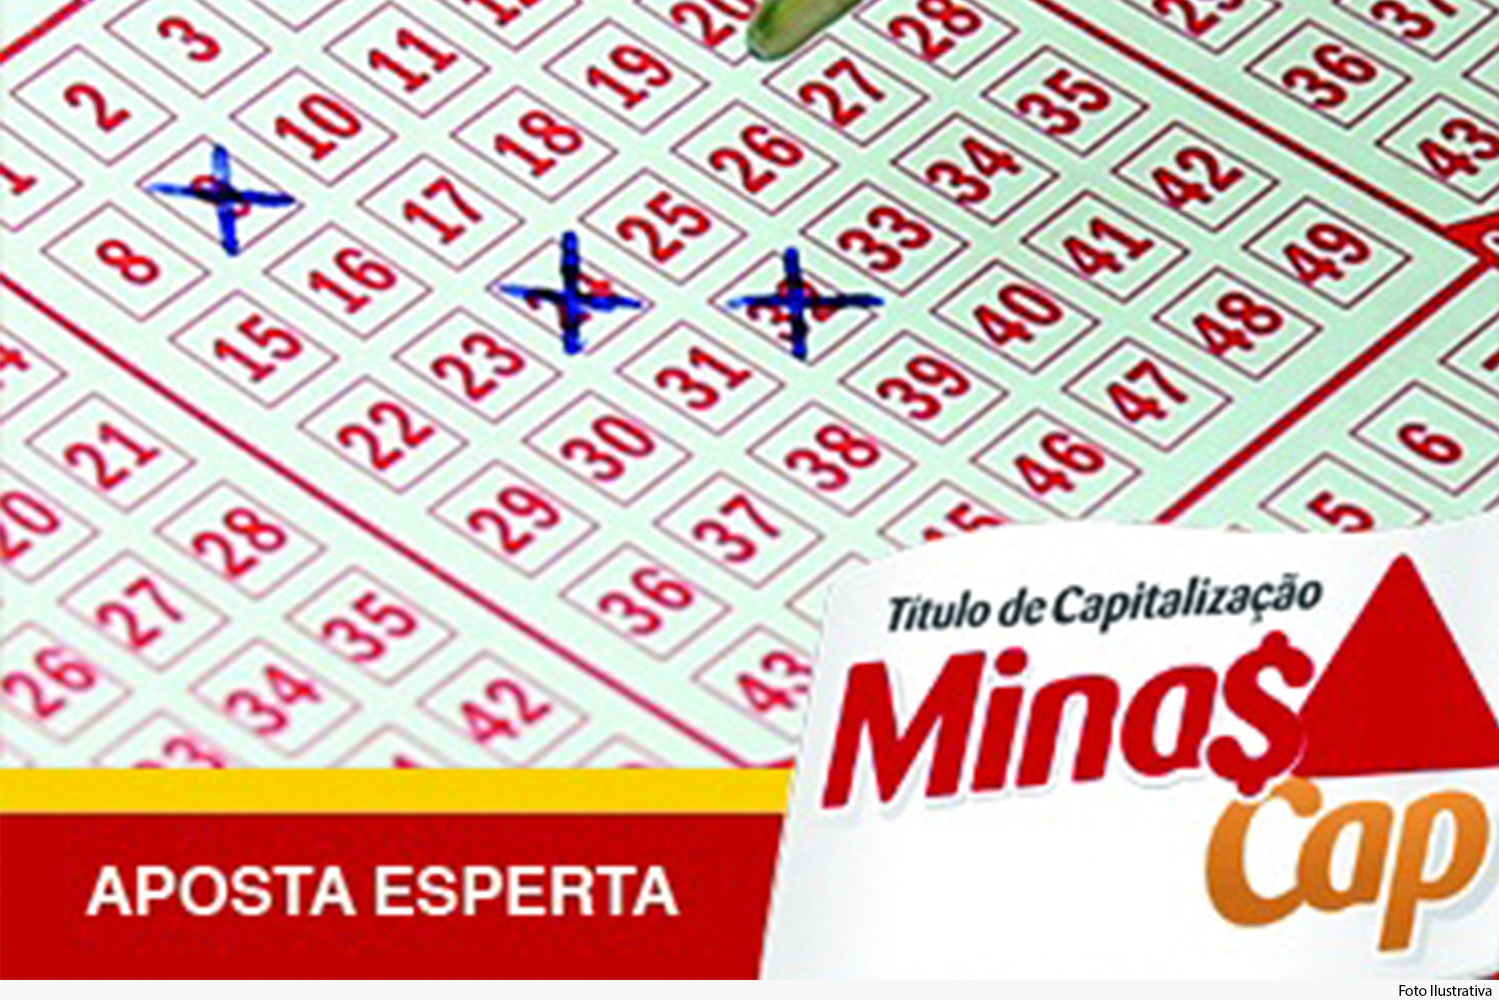 Cartela de jogo de loteria com a logo da Minascap com a frase "aposta esperta.